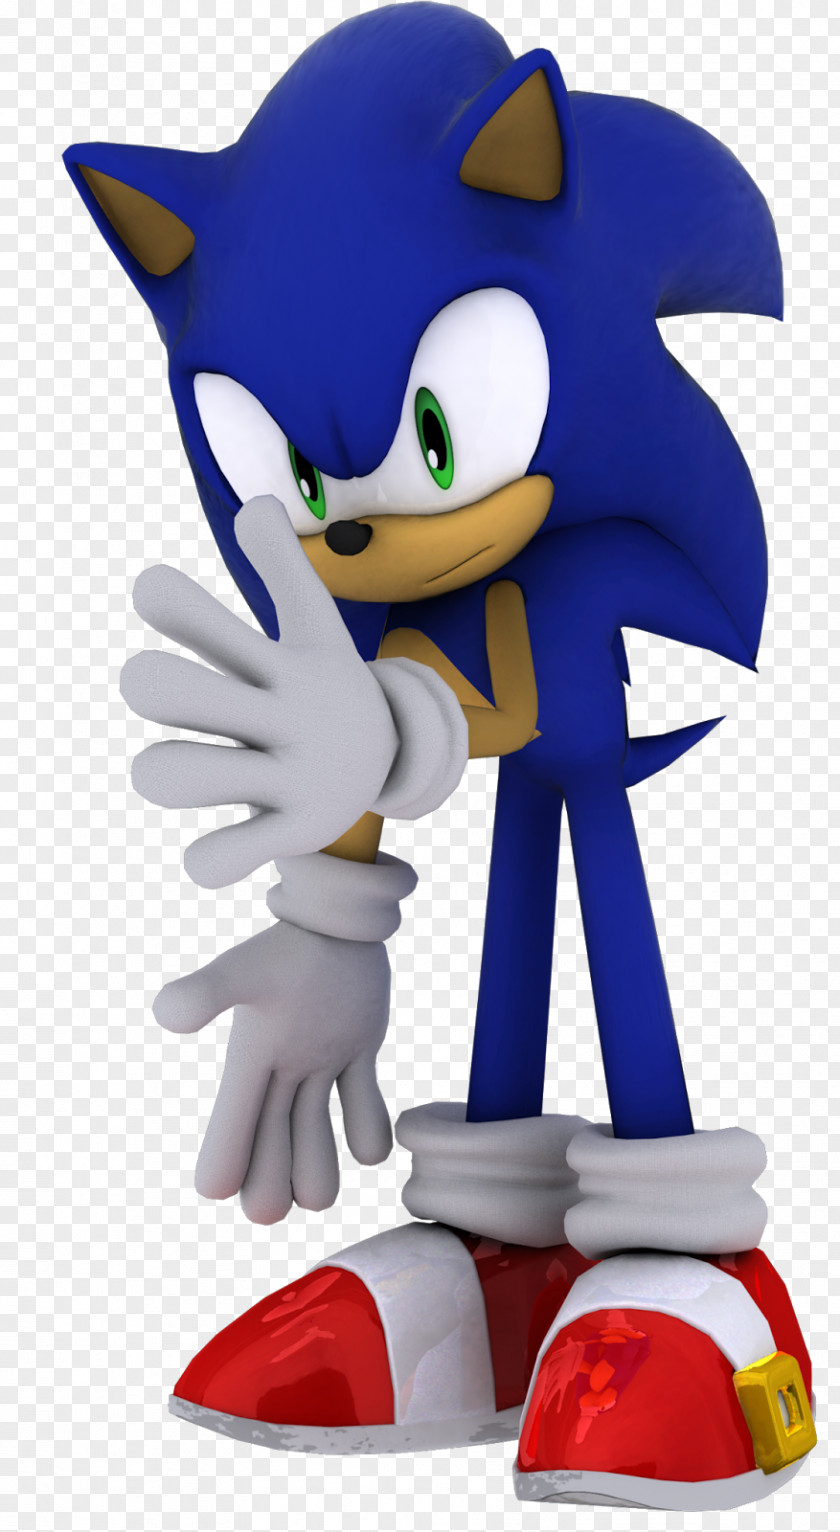 Sonic The Hedgehog 4 Episode Ii Cartoon Figurine Action & Toy Figures Cobalt Blue PNG